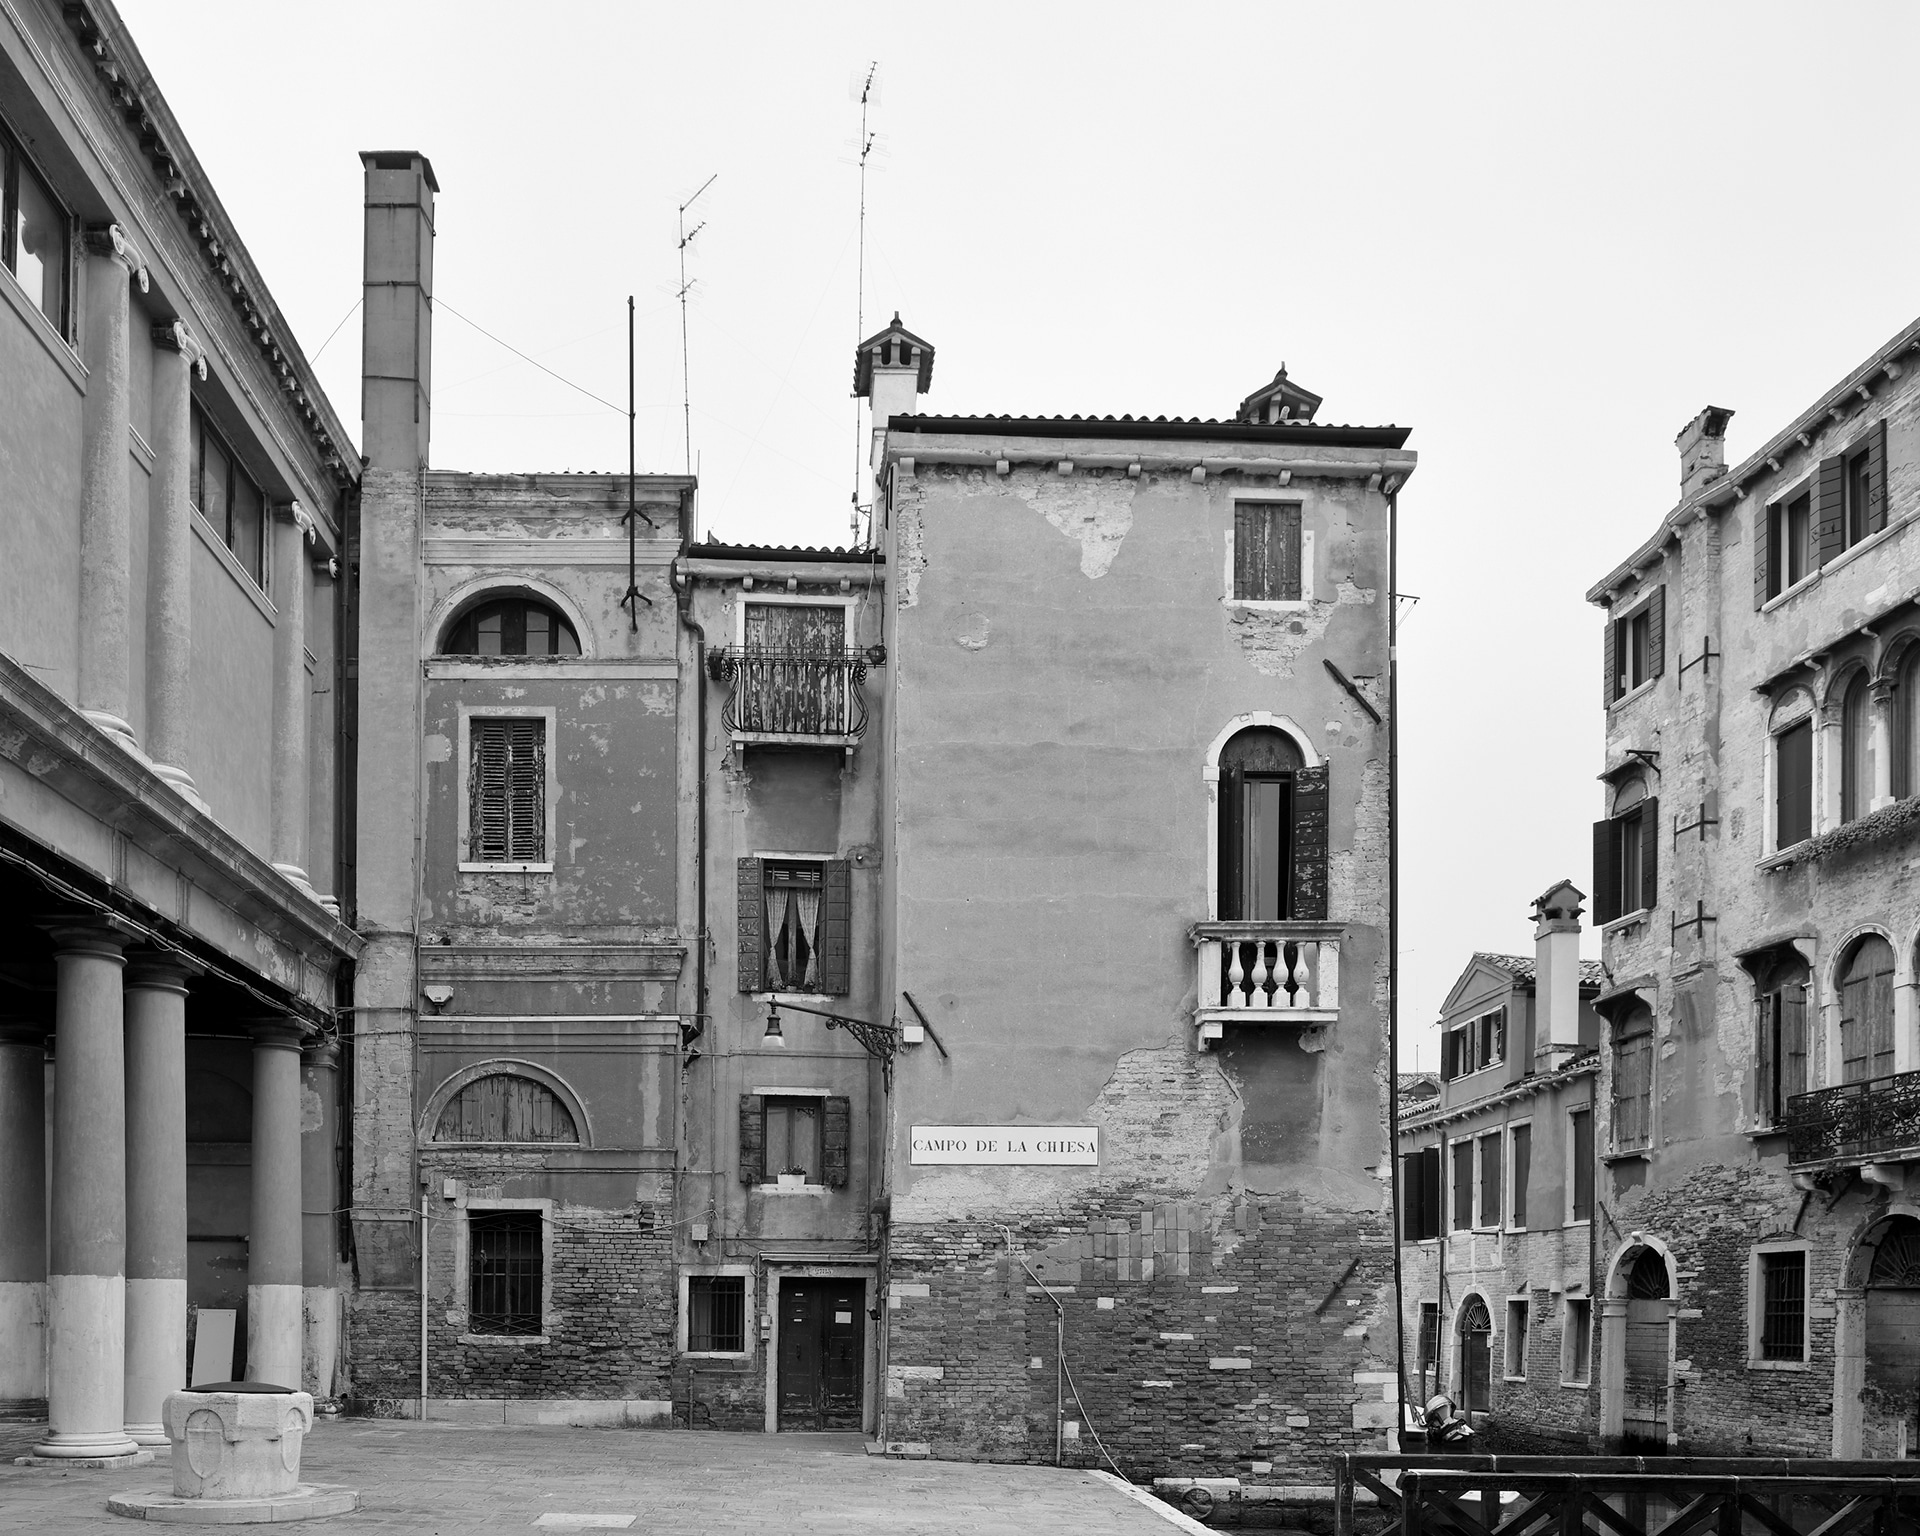 Castello, Campo de la Chiesa, 2020. Venice Urban Photo Project / Mario Peliti